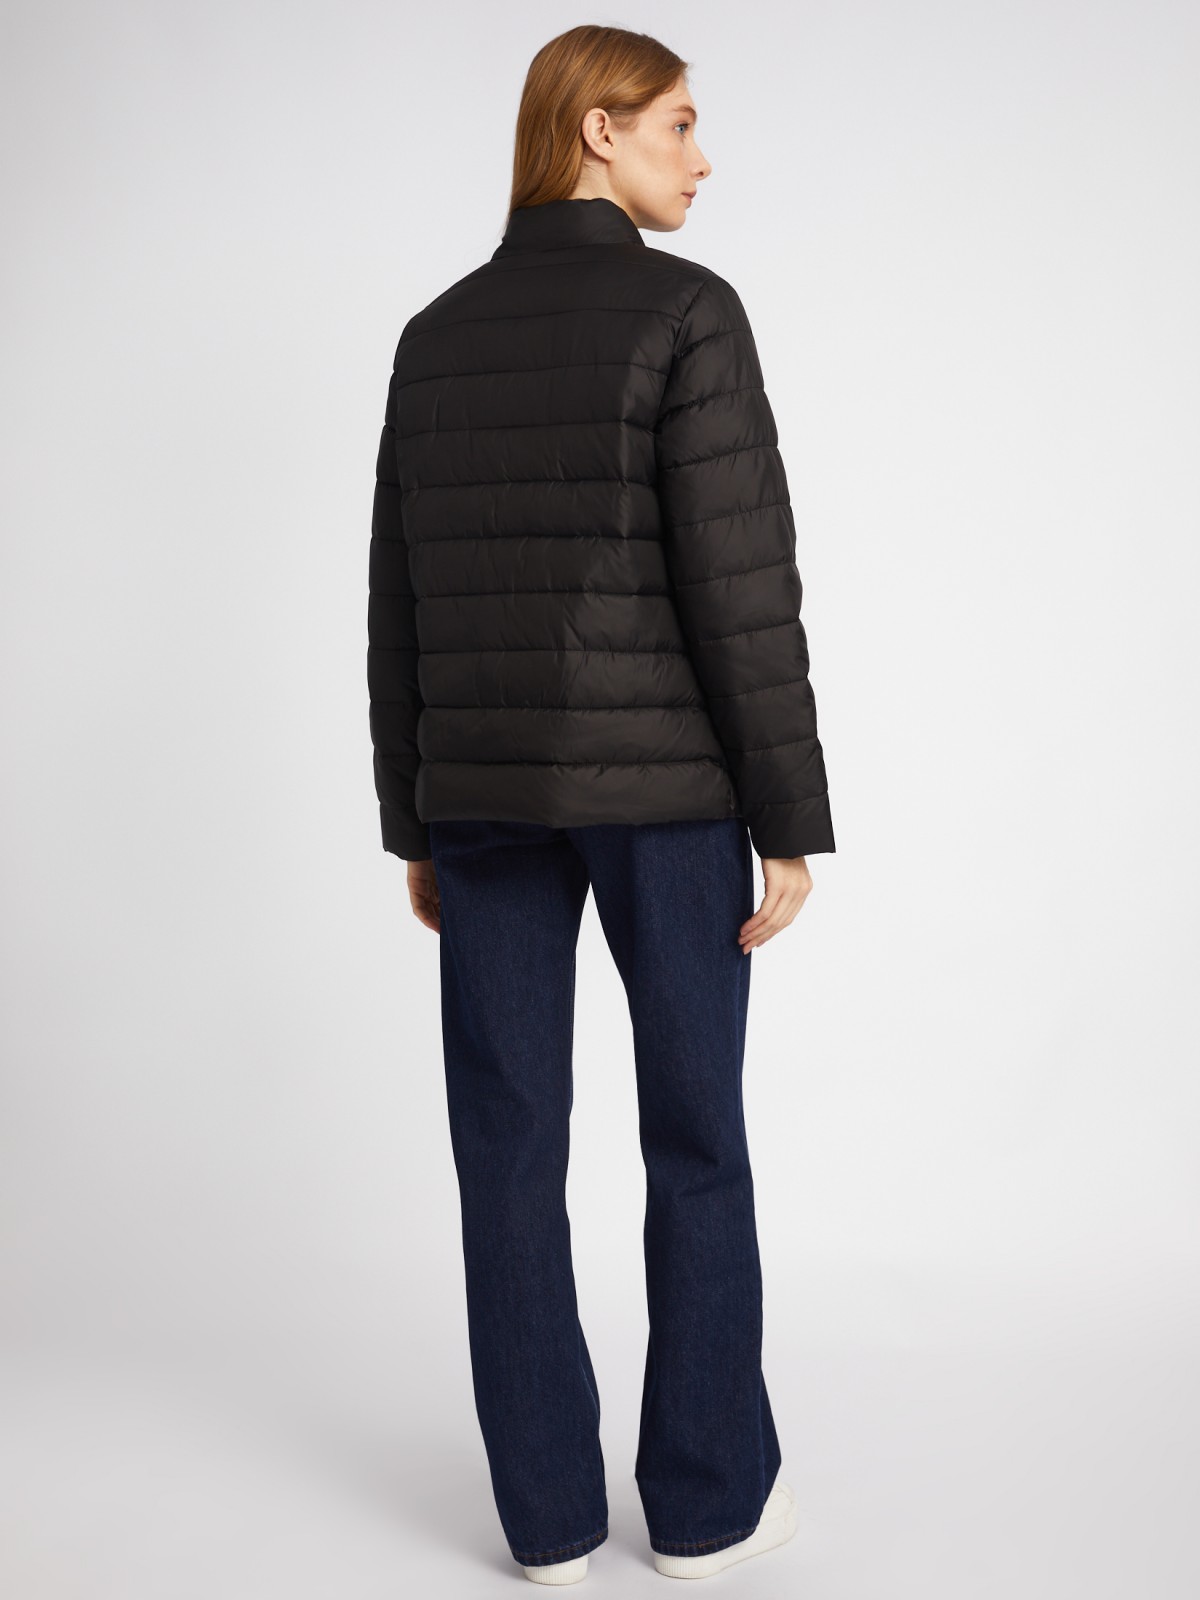 Утеплённая короткая куртка на молнии с воротником zolla 024135112154, цвет черный, размер S - фото 6